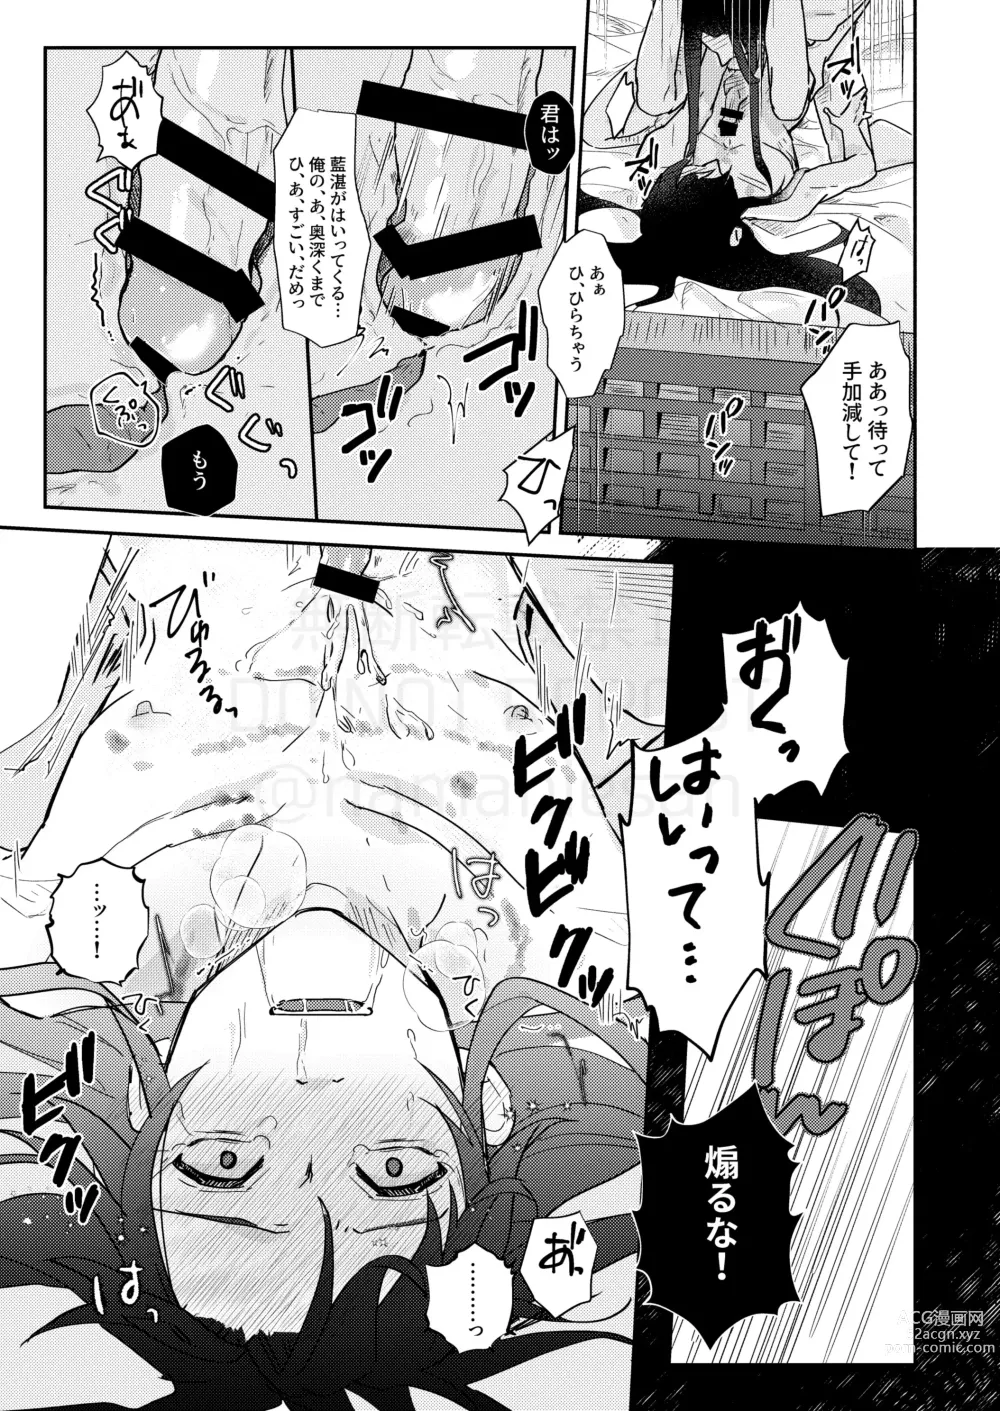 Page 32 of doujinshi Shirafu no Kimi ga!?